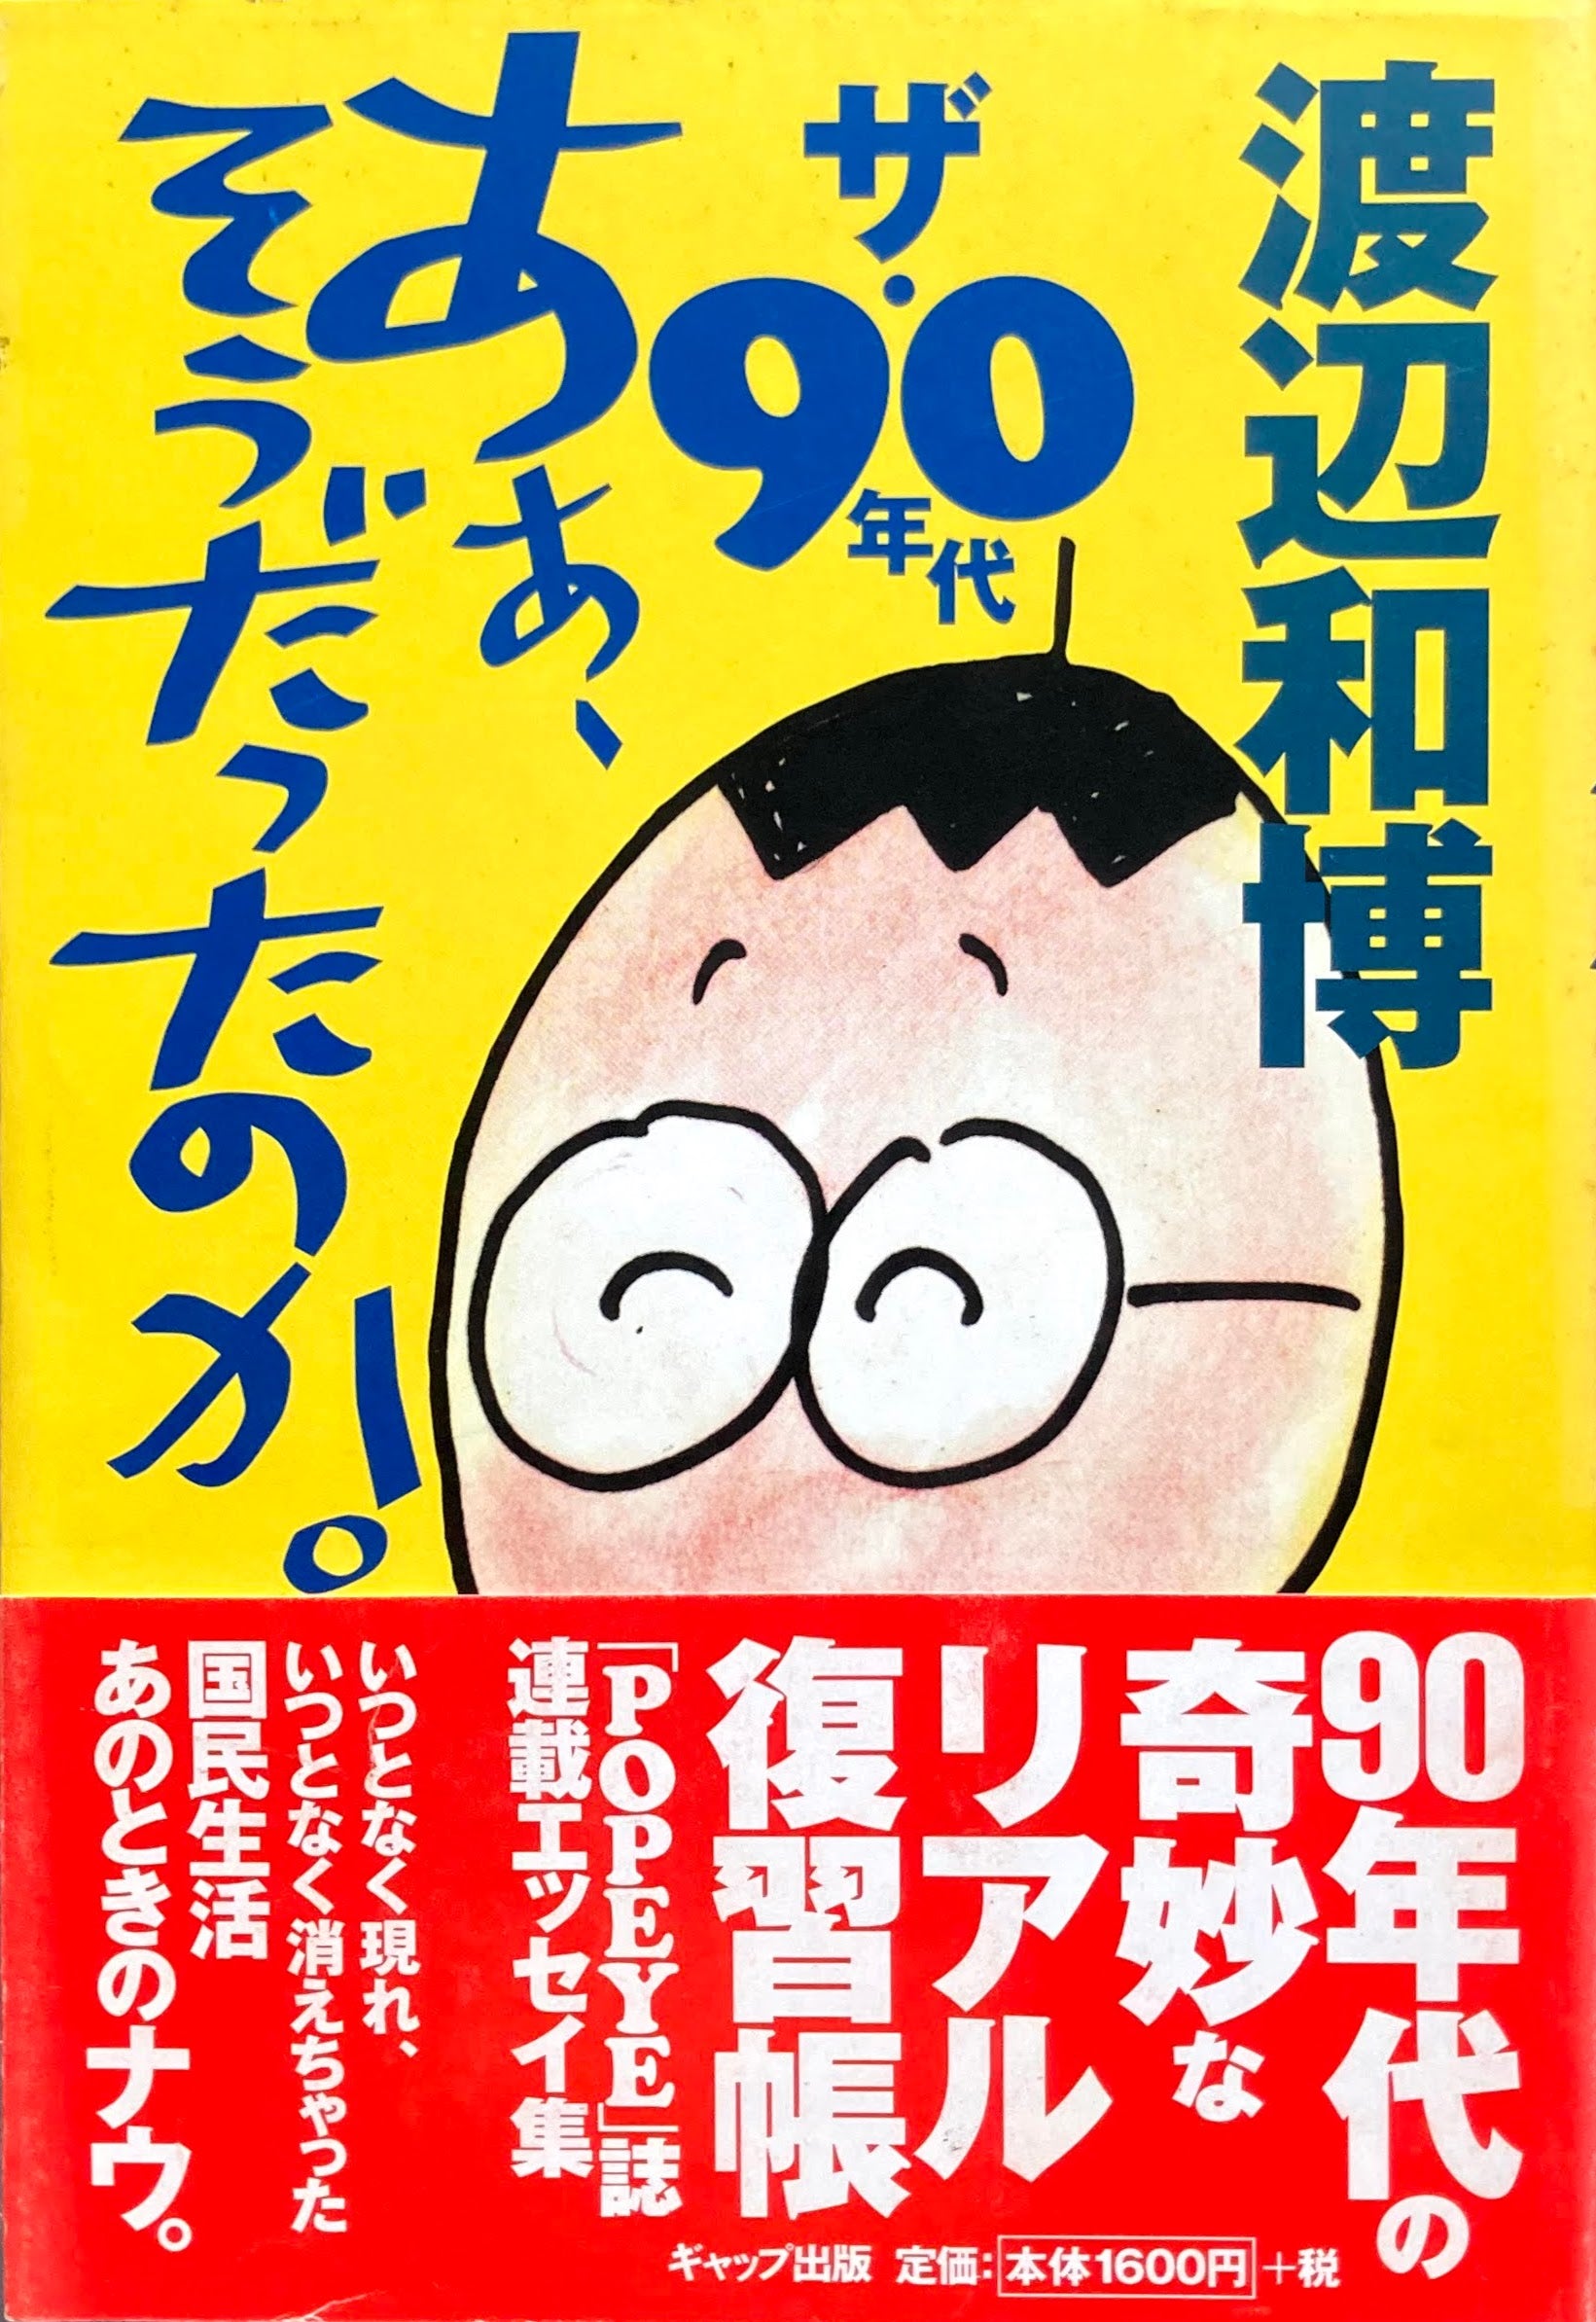 渡辺和博'91年初版「マル和式マーケティング理論」